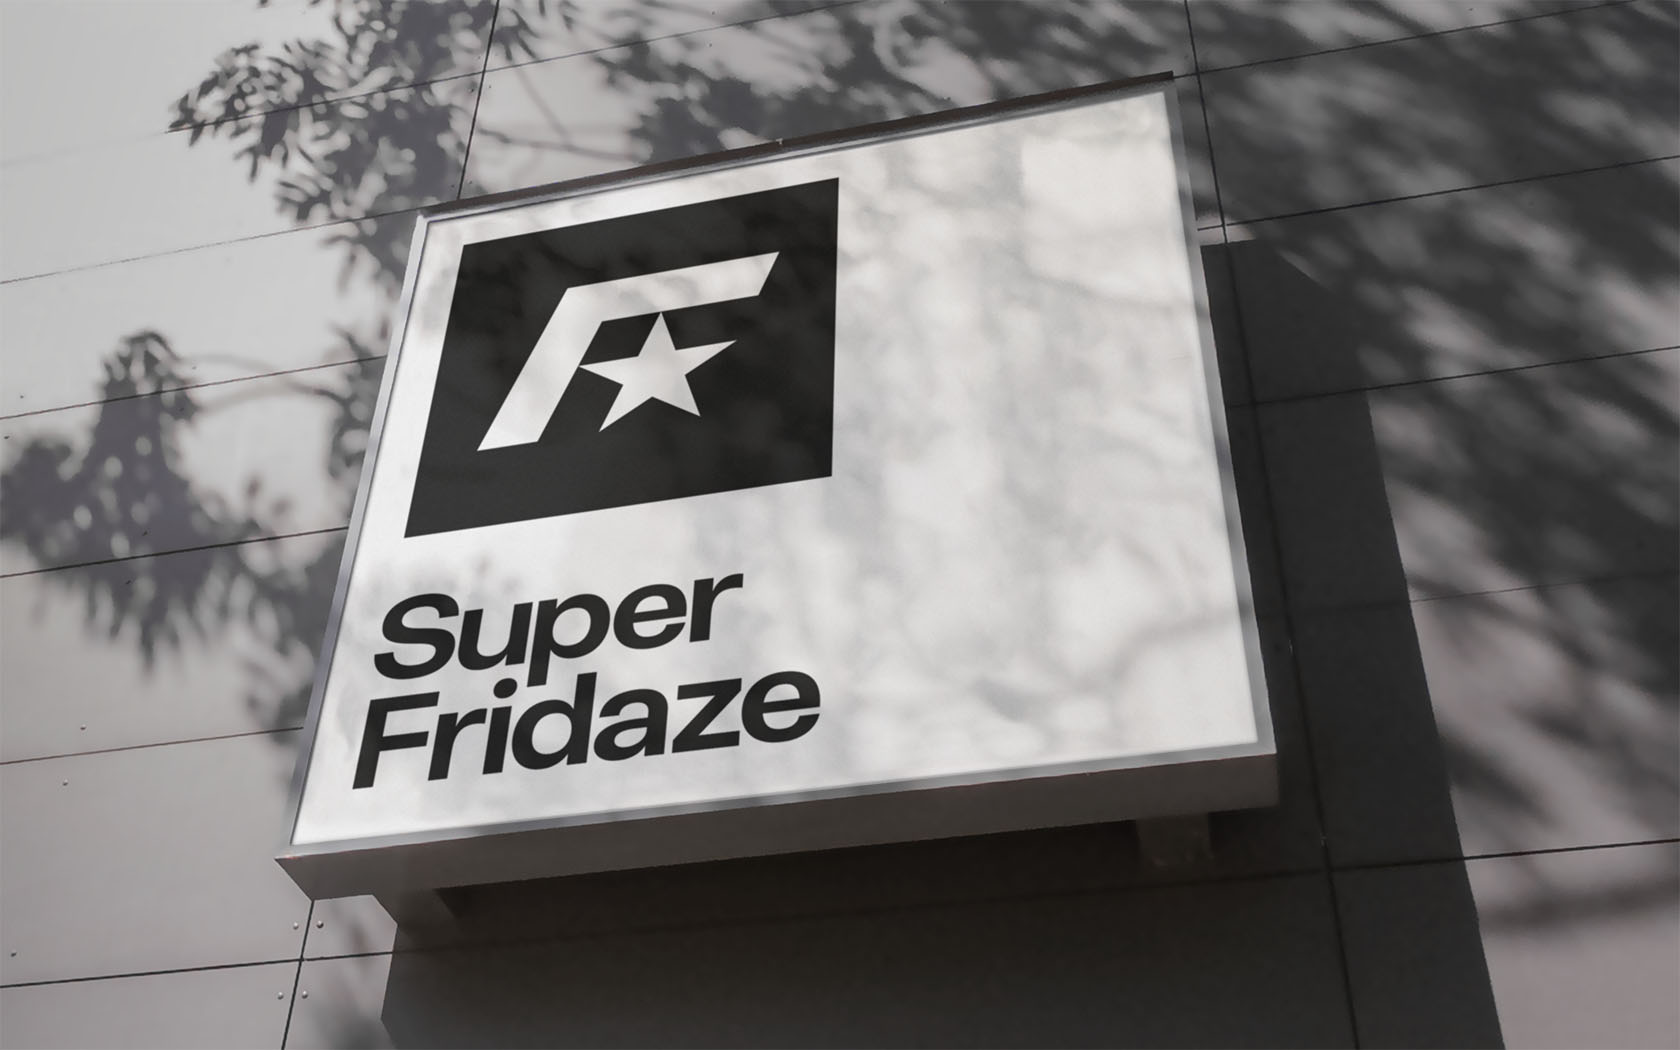 Super Fridaze. Building sign with brand logo